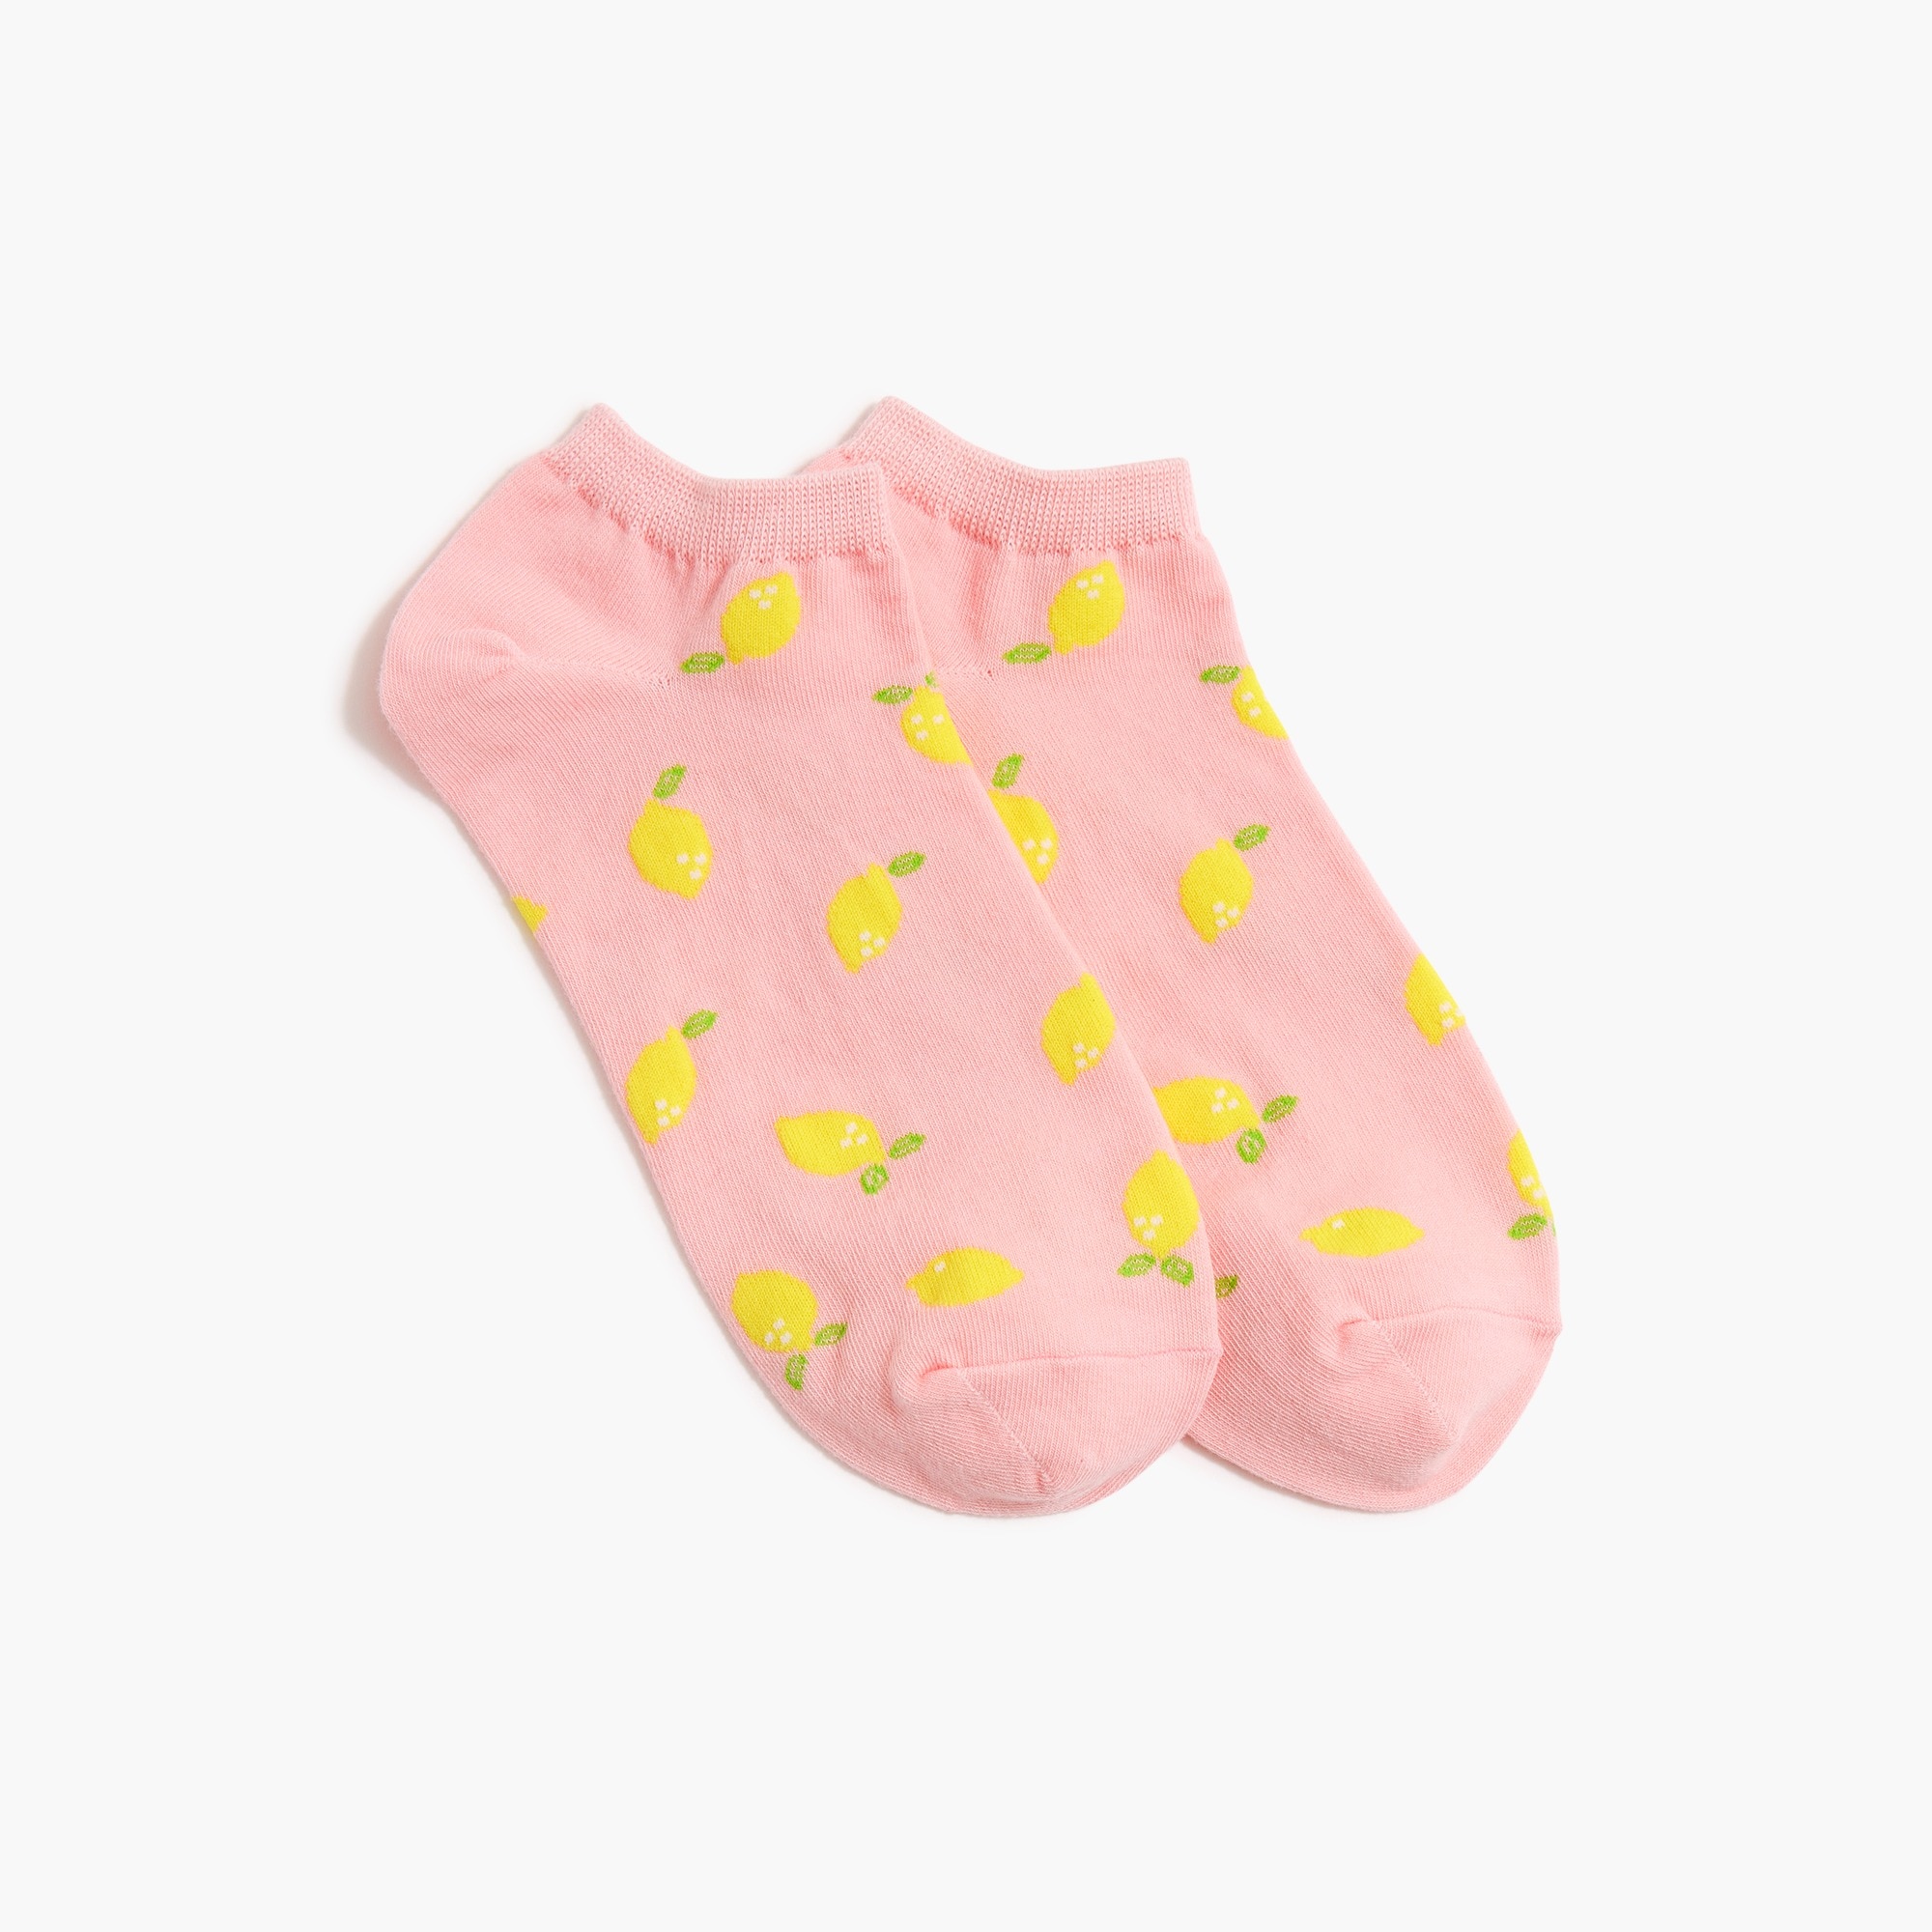  Lemon ankle socks